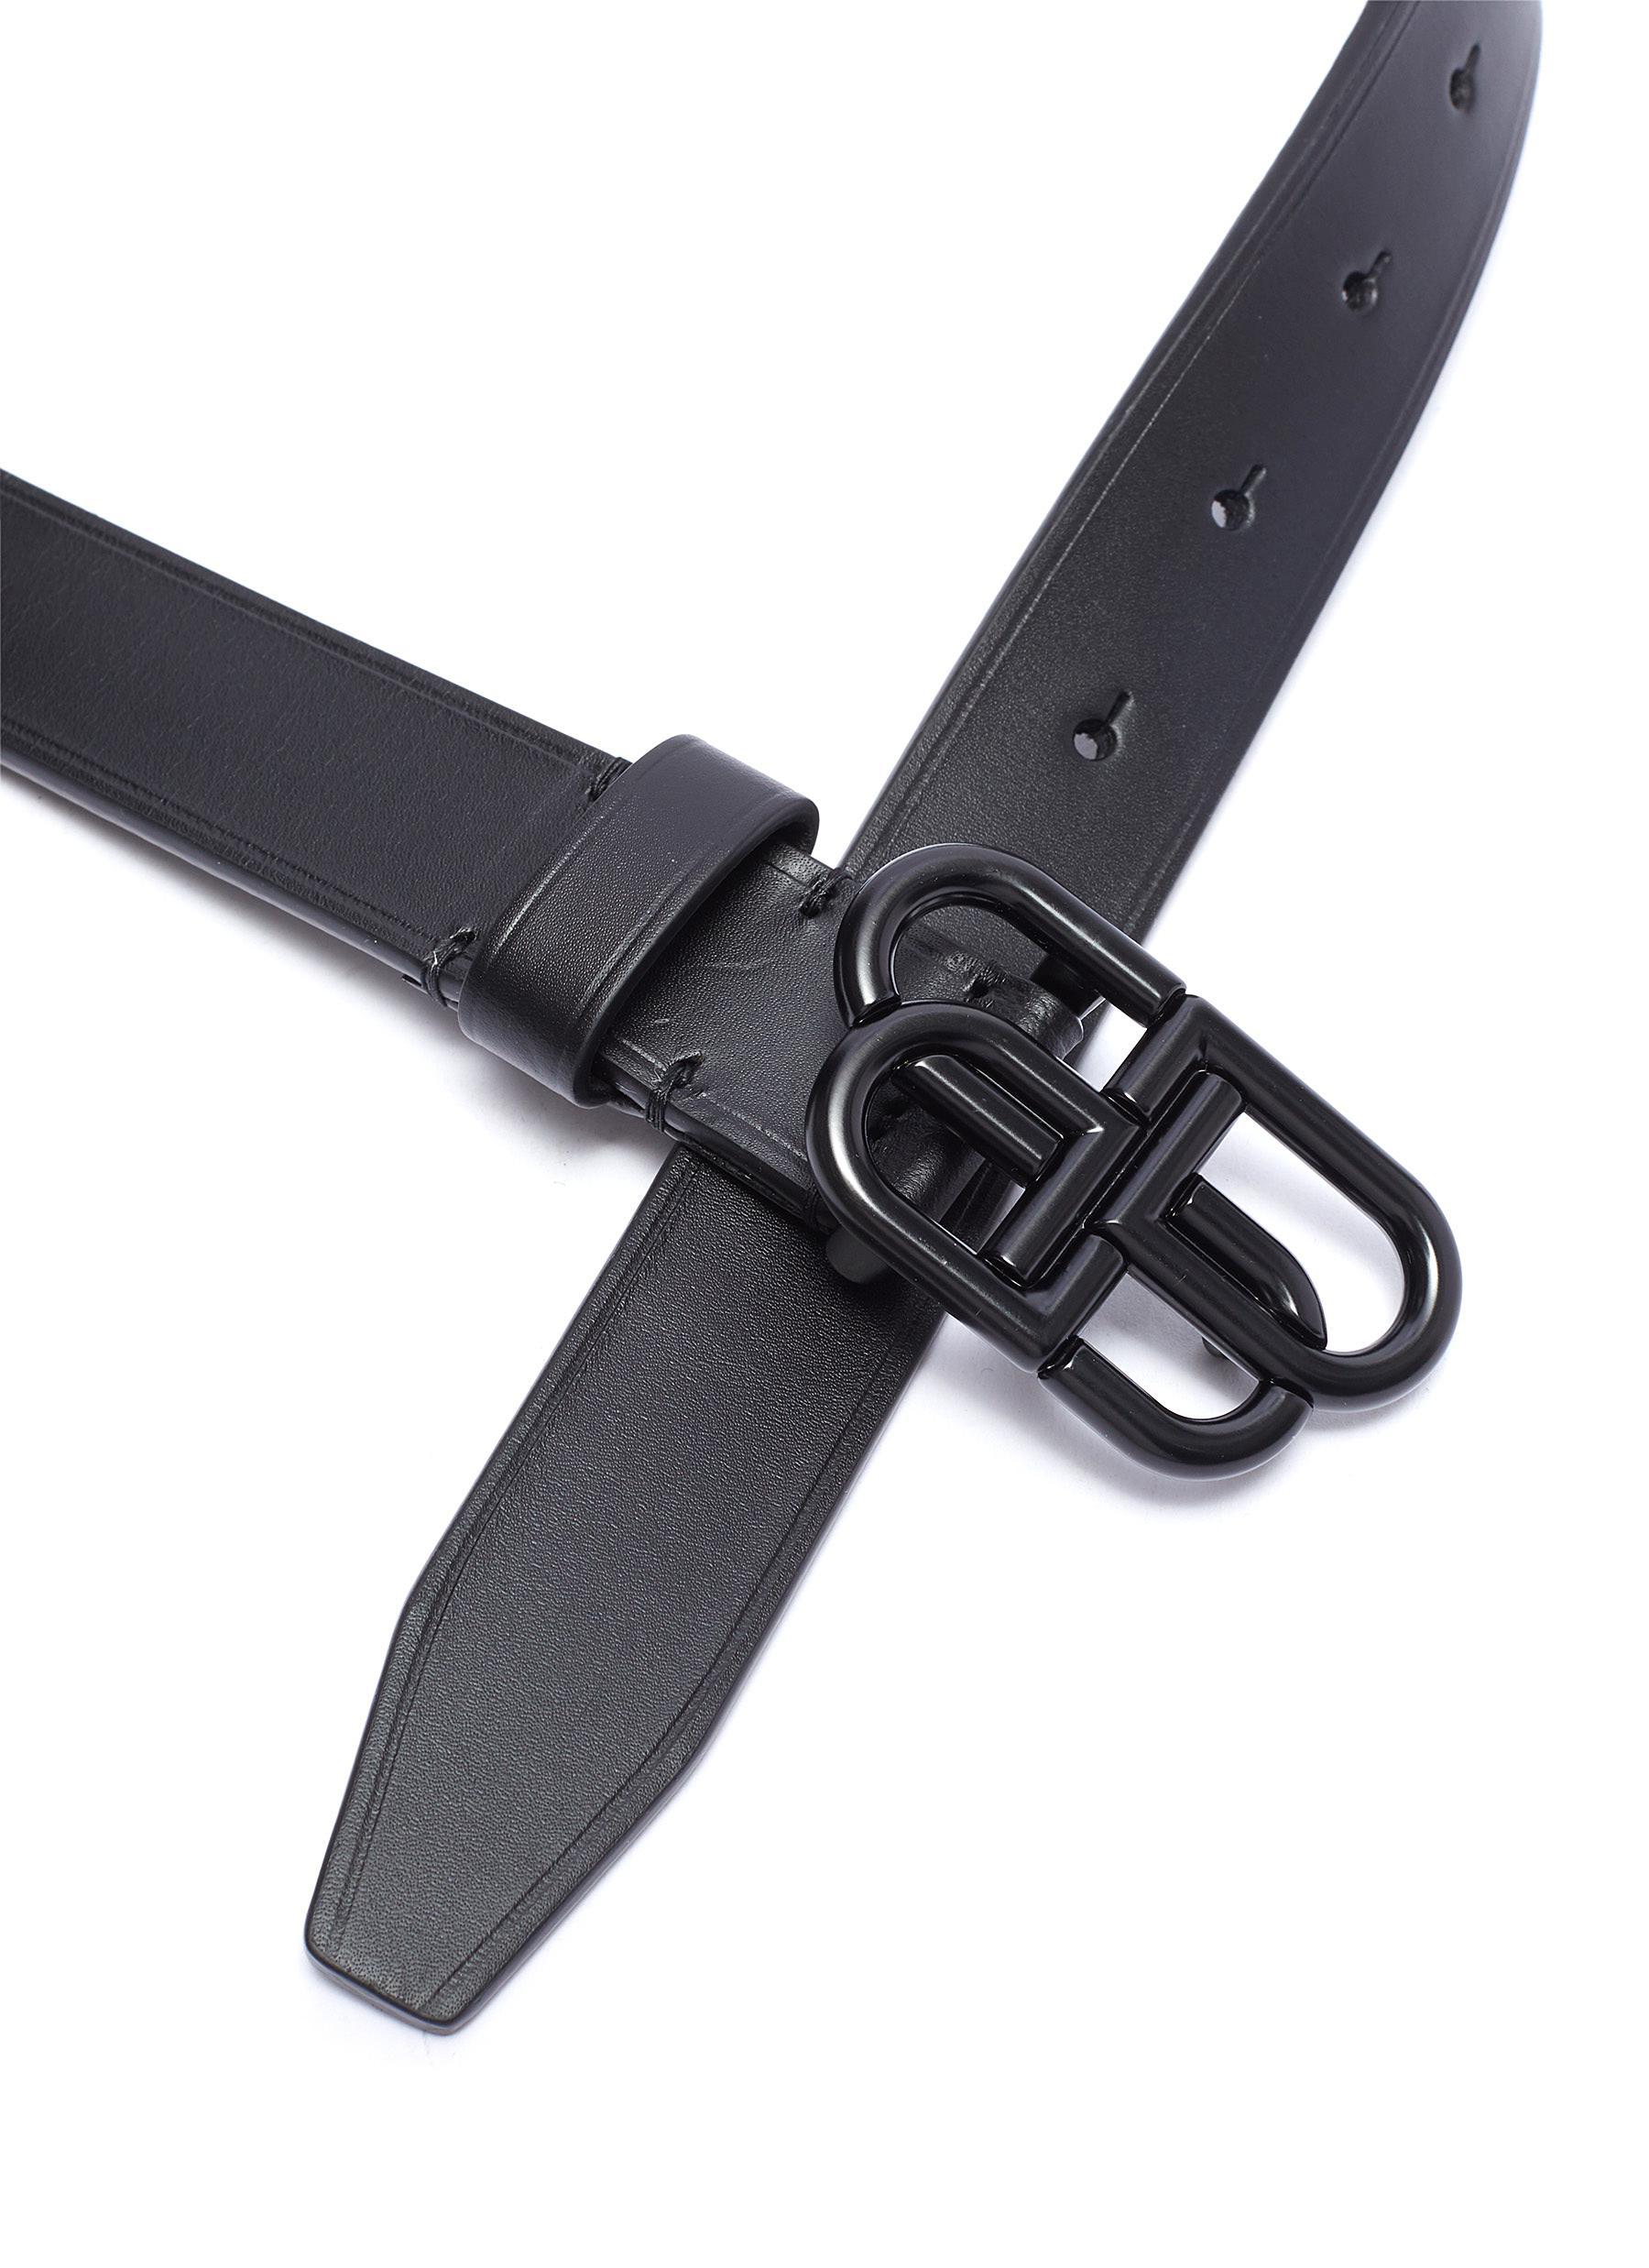 Balenciaga 'bb' Logo Thin Leather Belt in Black - Lyst